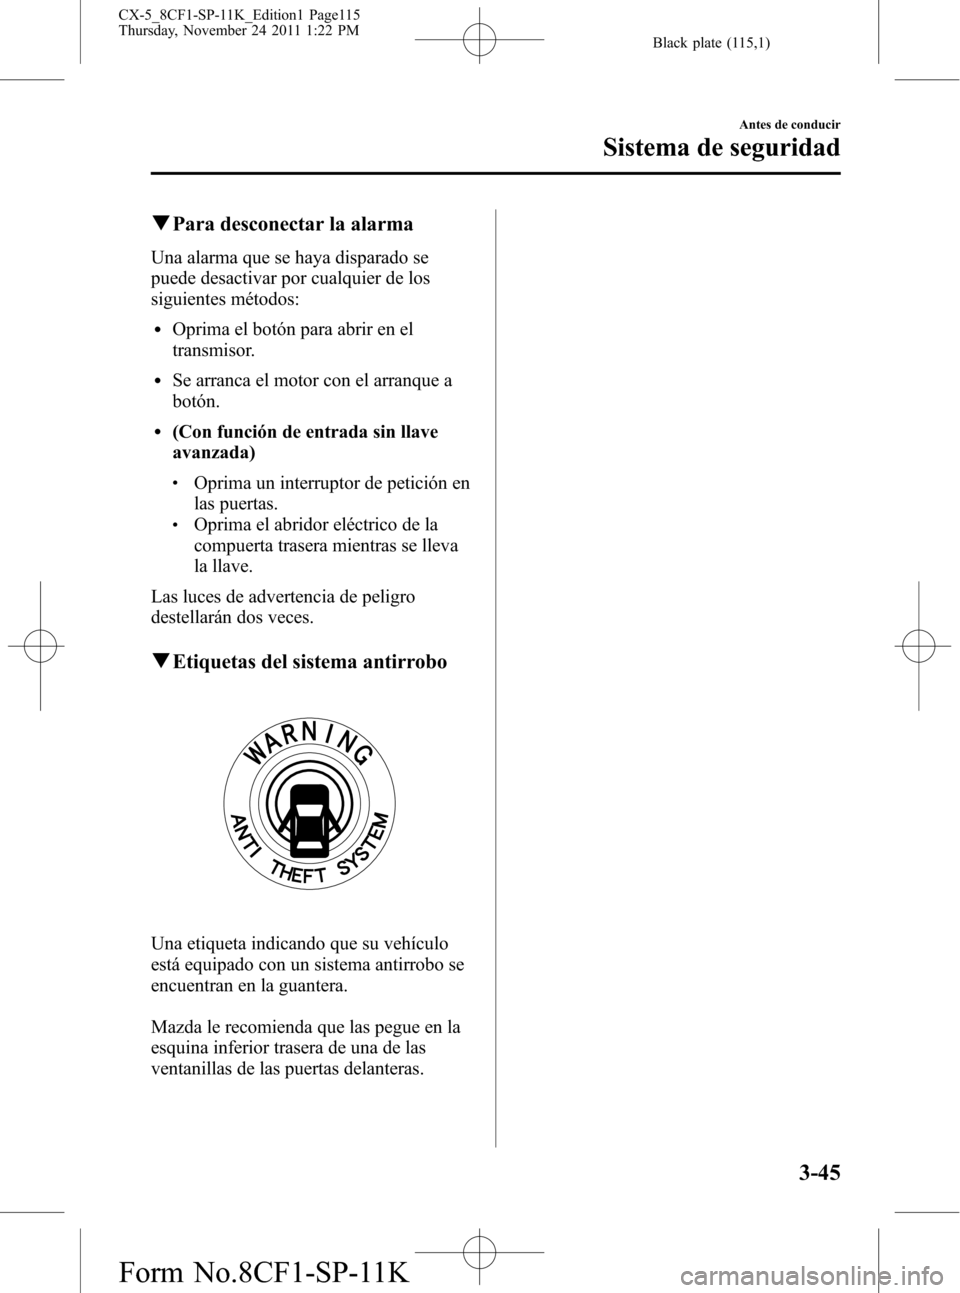 MAZDA MODEL CX-5 2012  Manual del propietario (in Spanish)  Black plate (115,1)
qPara desconectar la alarma
Una alarma que se haya disparado se
puede desactivar por cualquier de los
siguientes métodos:
lOprima el botón para abrir en el
transmisor.
lSe arranc